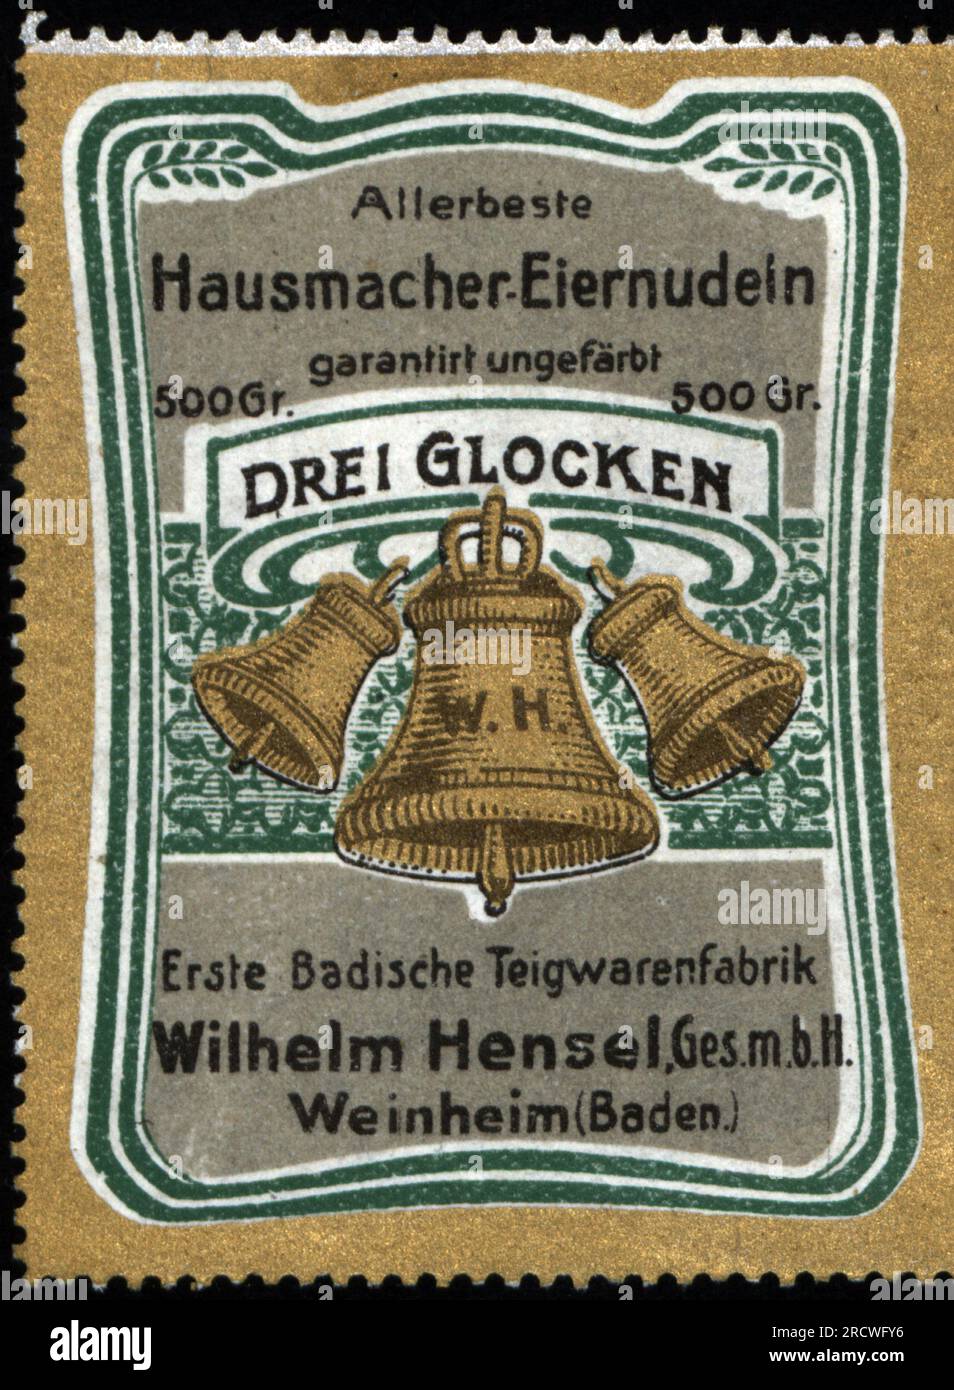 Pubblicità, cibo, spaghetti all'uovo Drei Glocken, manifattura di pasta Baden Wilhelm Hensel, GmbH, Weinheim, ADDITIONAL-RIGHTS-CLEARANCE-INFO-NOT-AVAILABLE Foto Stock